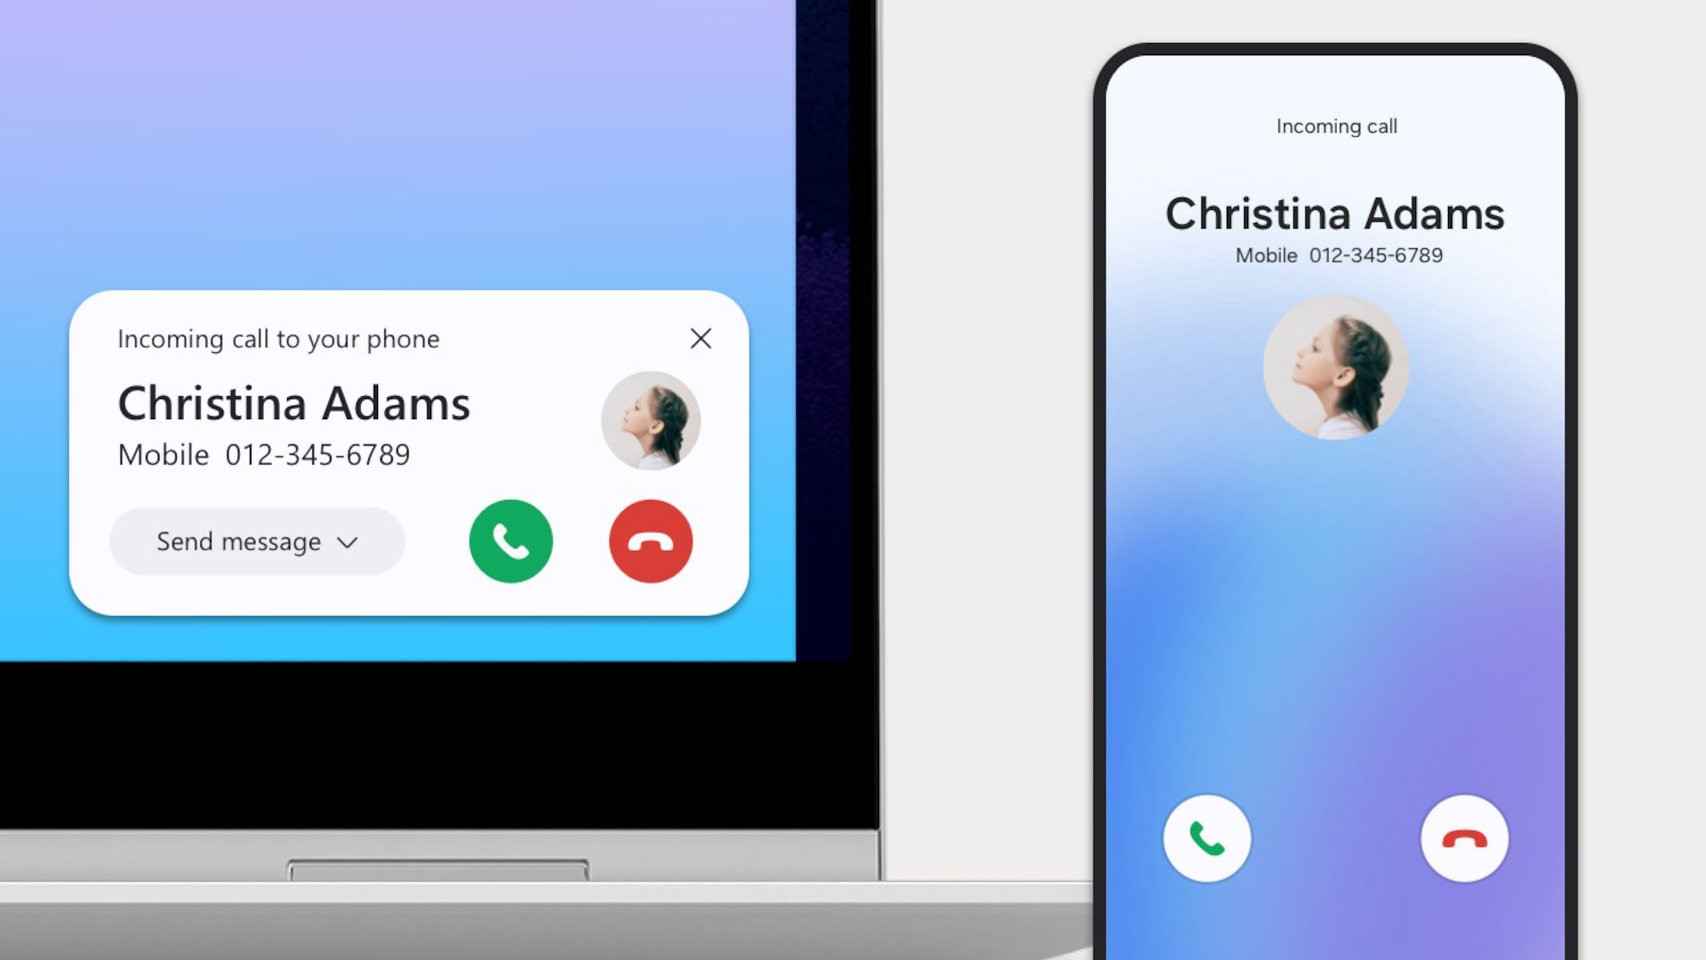 La app de Teléfono de Samsung mostrará una notificación cuando recibamos una llamada